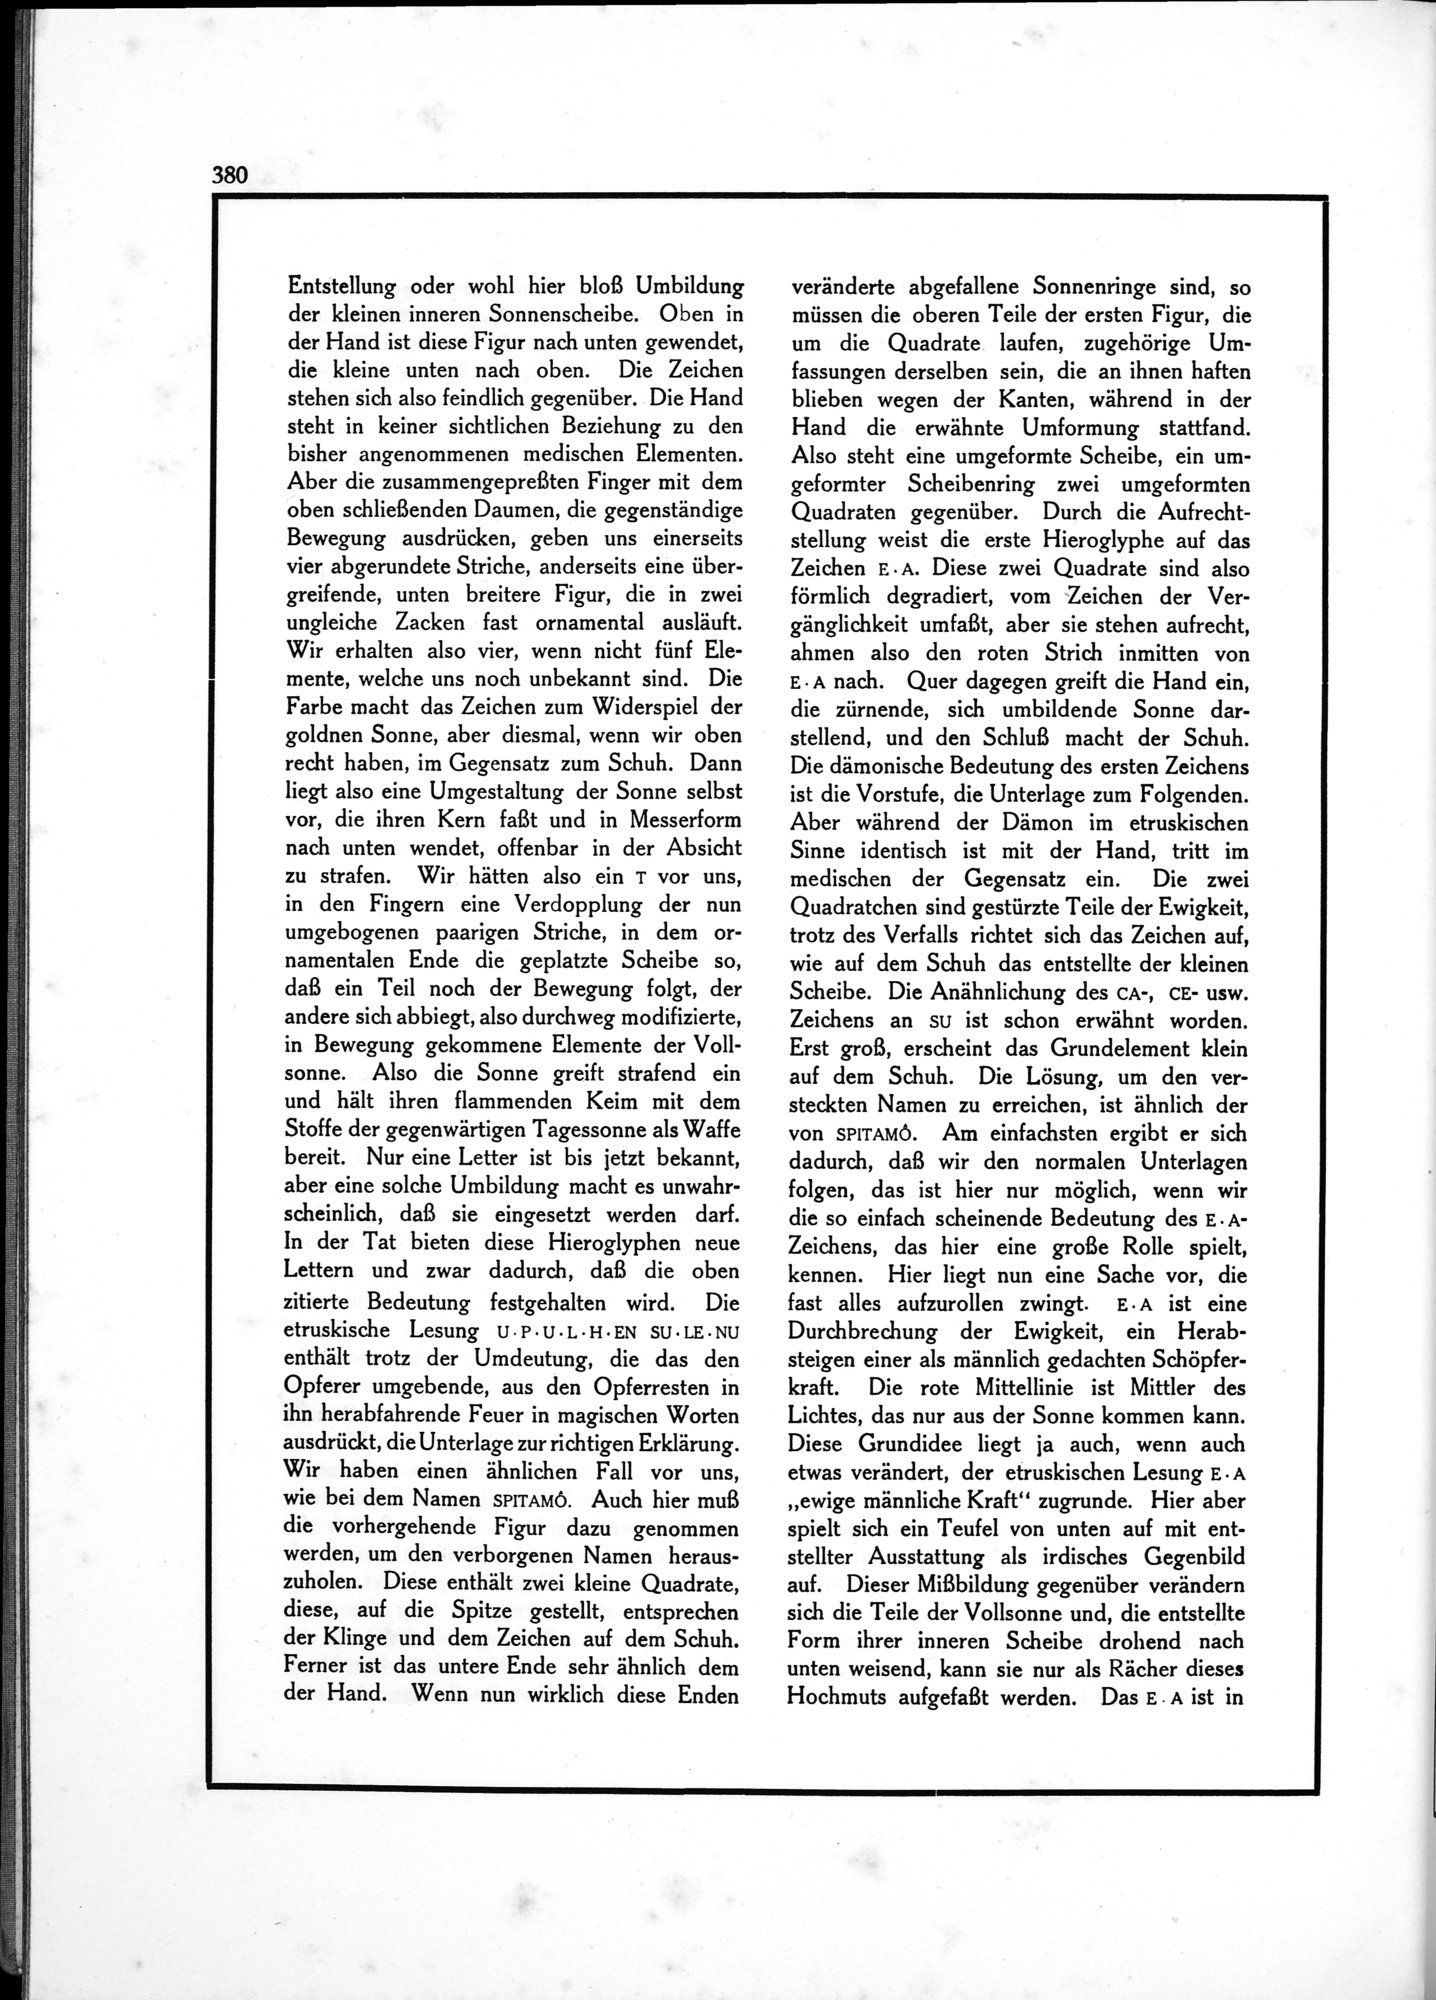 Die Teufel des Avesta und Ihre Beziehungen zur Ikonographie des Buddhismus Zentral-Asiens : vol.1 / Page 384 (Grayscale High Resolution Image)